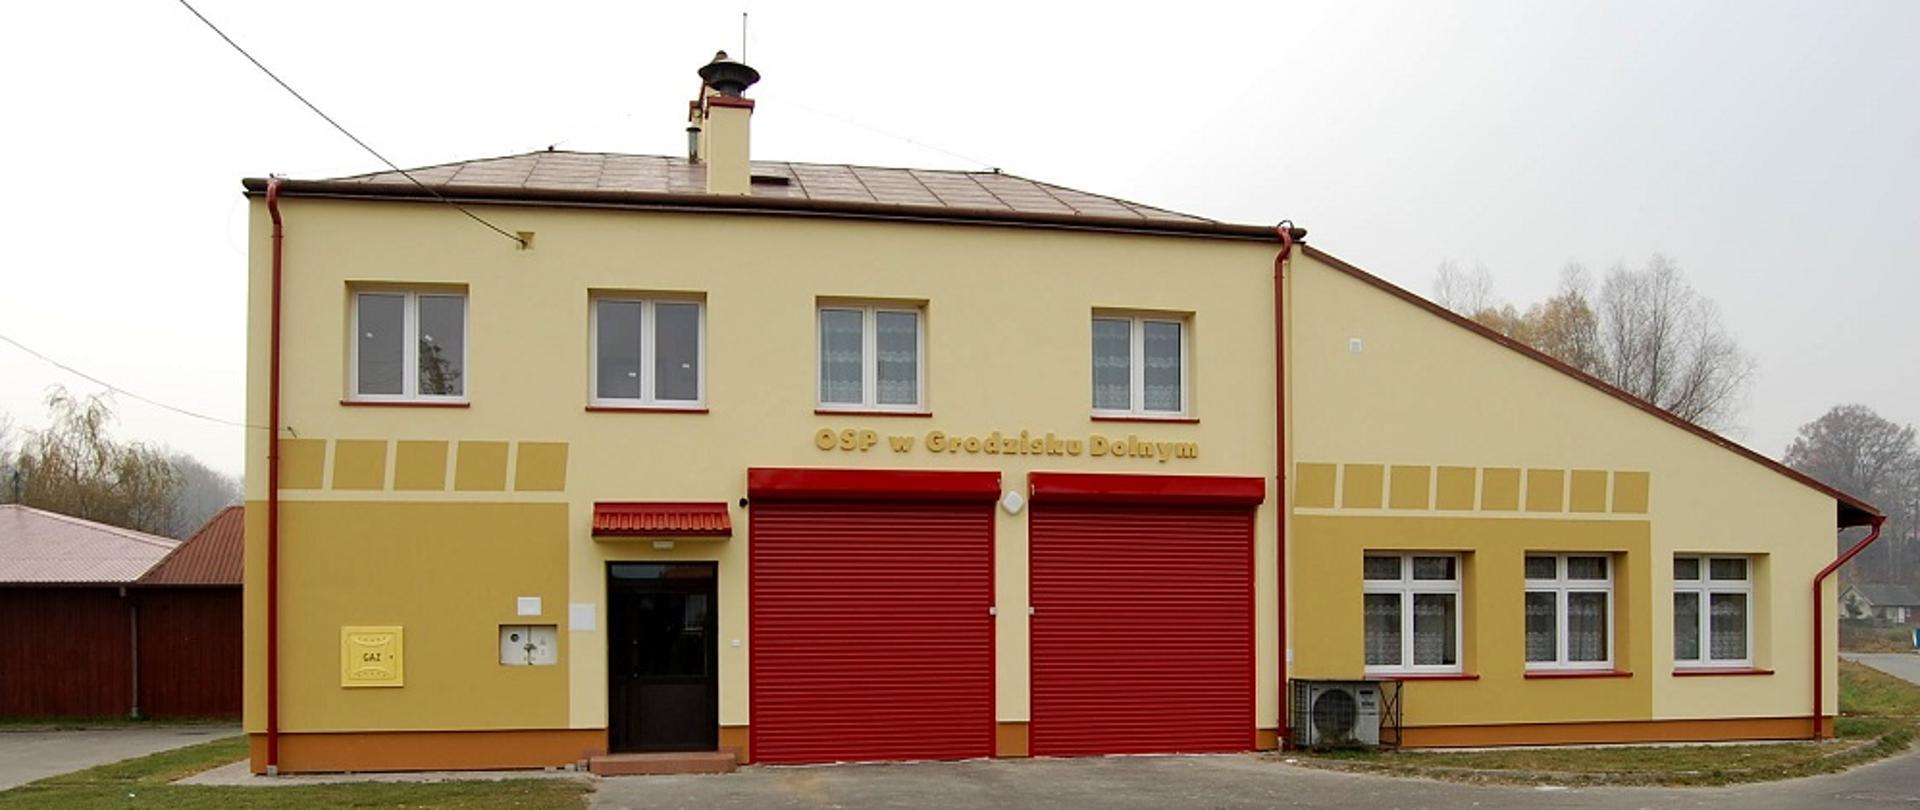 Żółty, dwupiętrowy budynek Straży Pożarnej, dwoje czerwonych dużych drzwi i jedne mniejsze brązowe. 